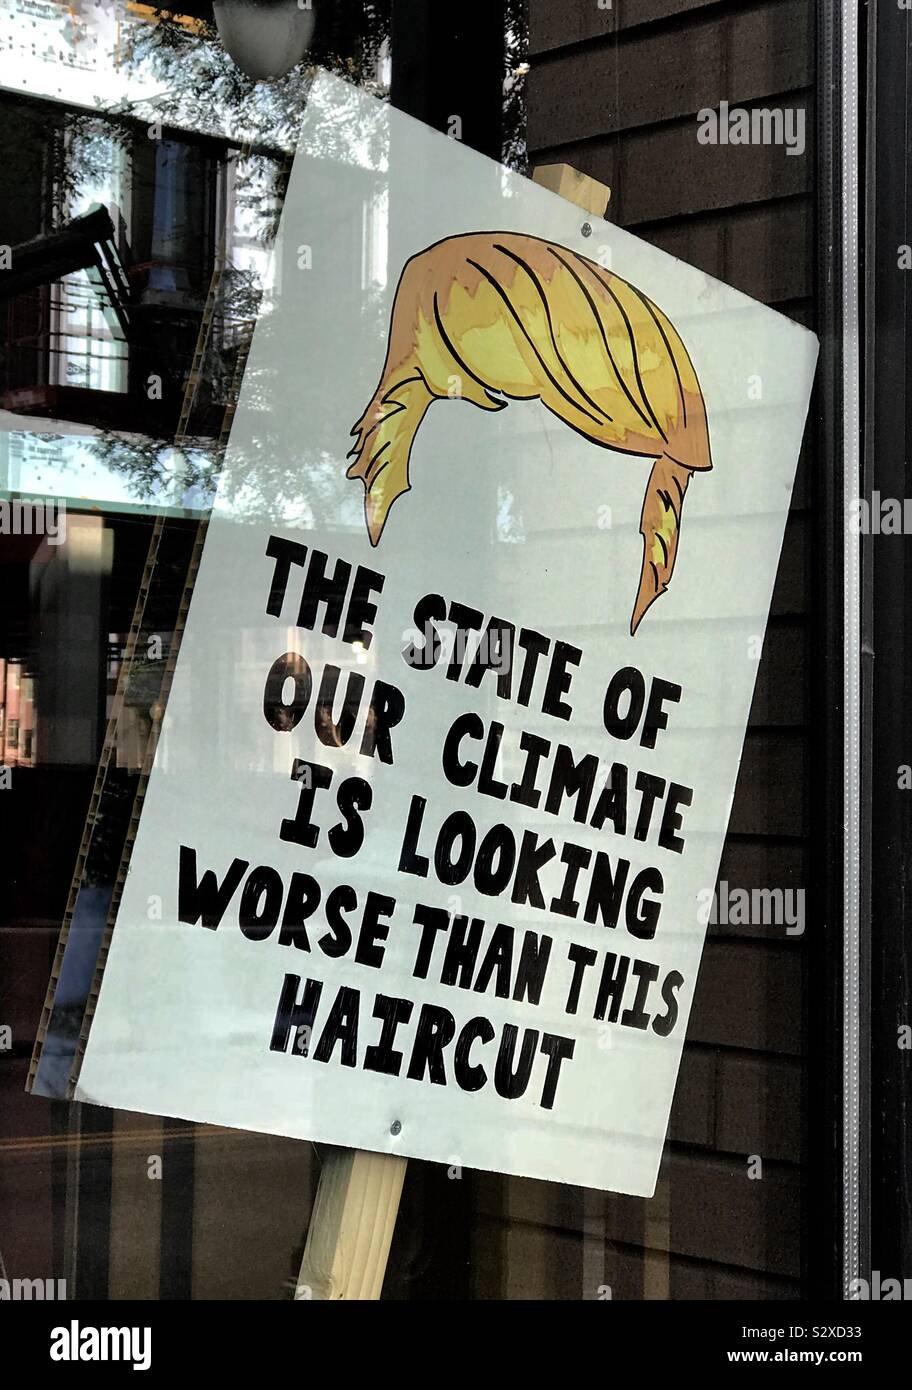 Ein Klimawandel slogan Banner in einem Denver, USA restaurant Fenster nach dem März heute. "Der Zustand unserer Klima sucht Schlimmer als dieses Haarschnitt" in Bezug auf Donald Trump im Besonderen. Stockfoto